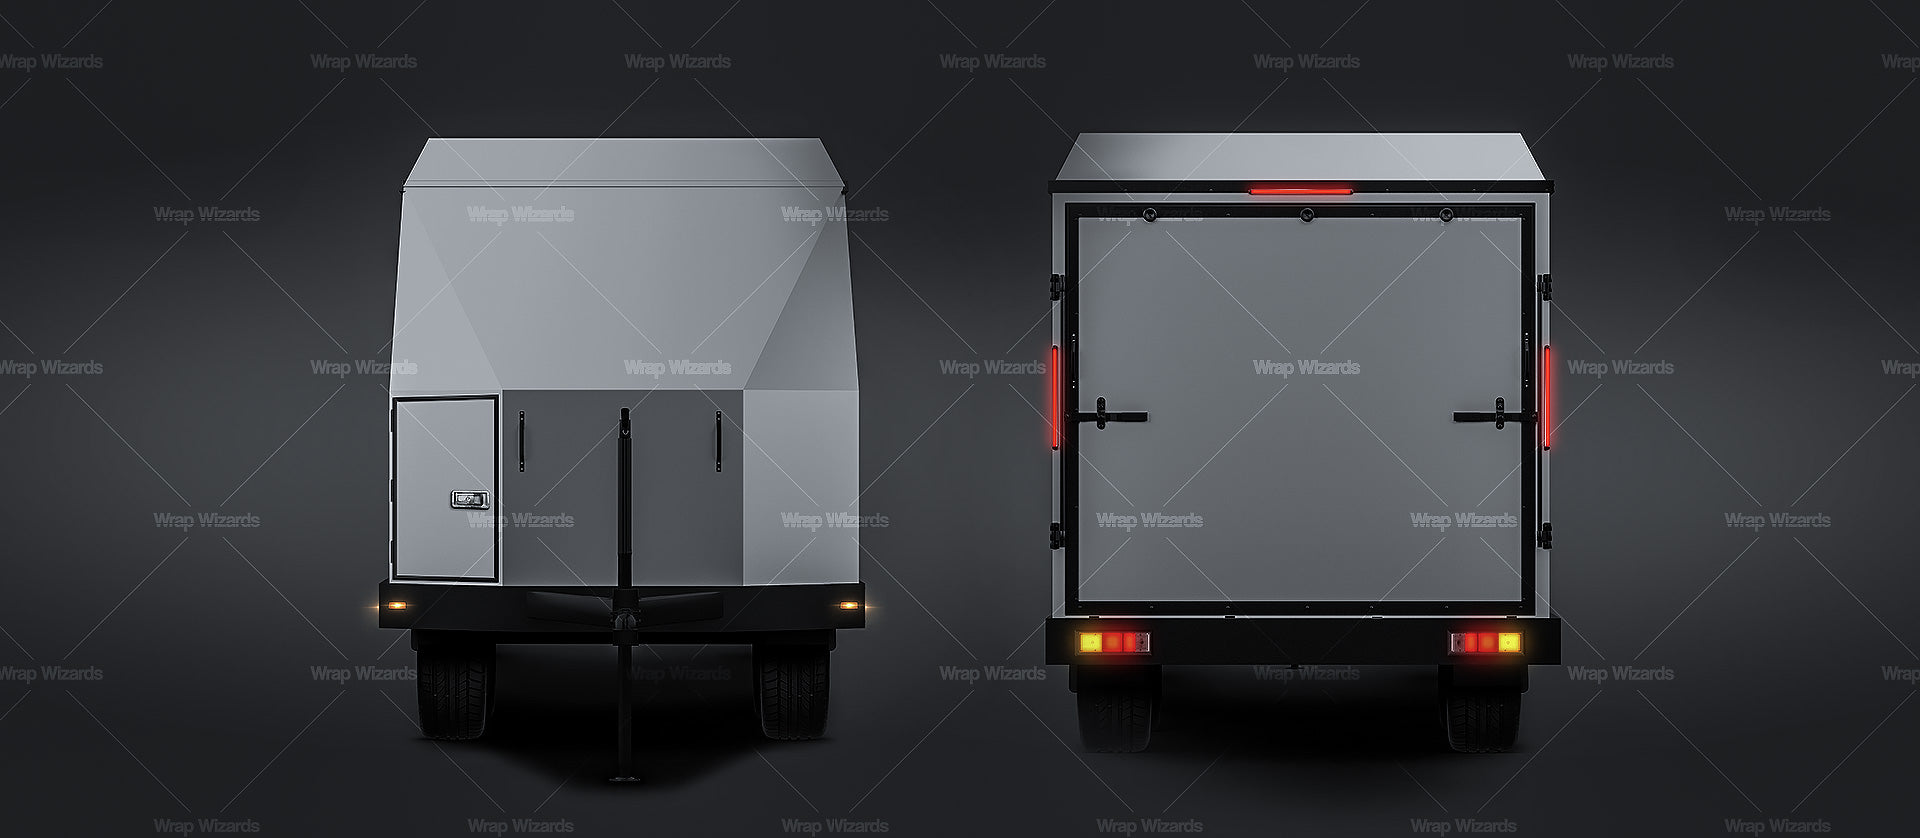 Motorsport trailer | car transporter | enclosed car hauler - Trailer Mockup